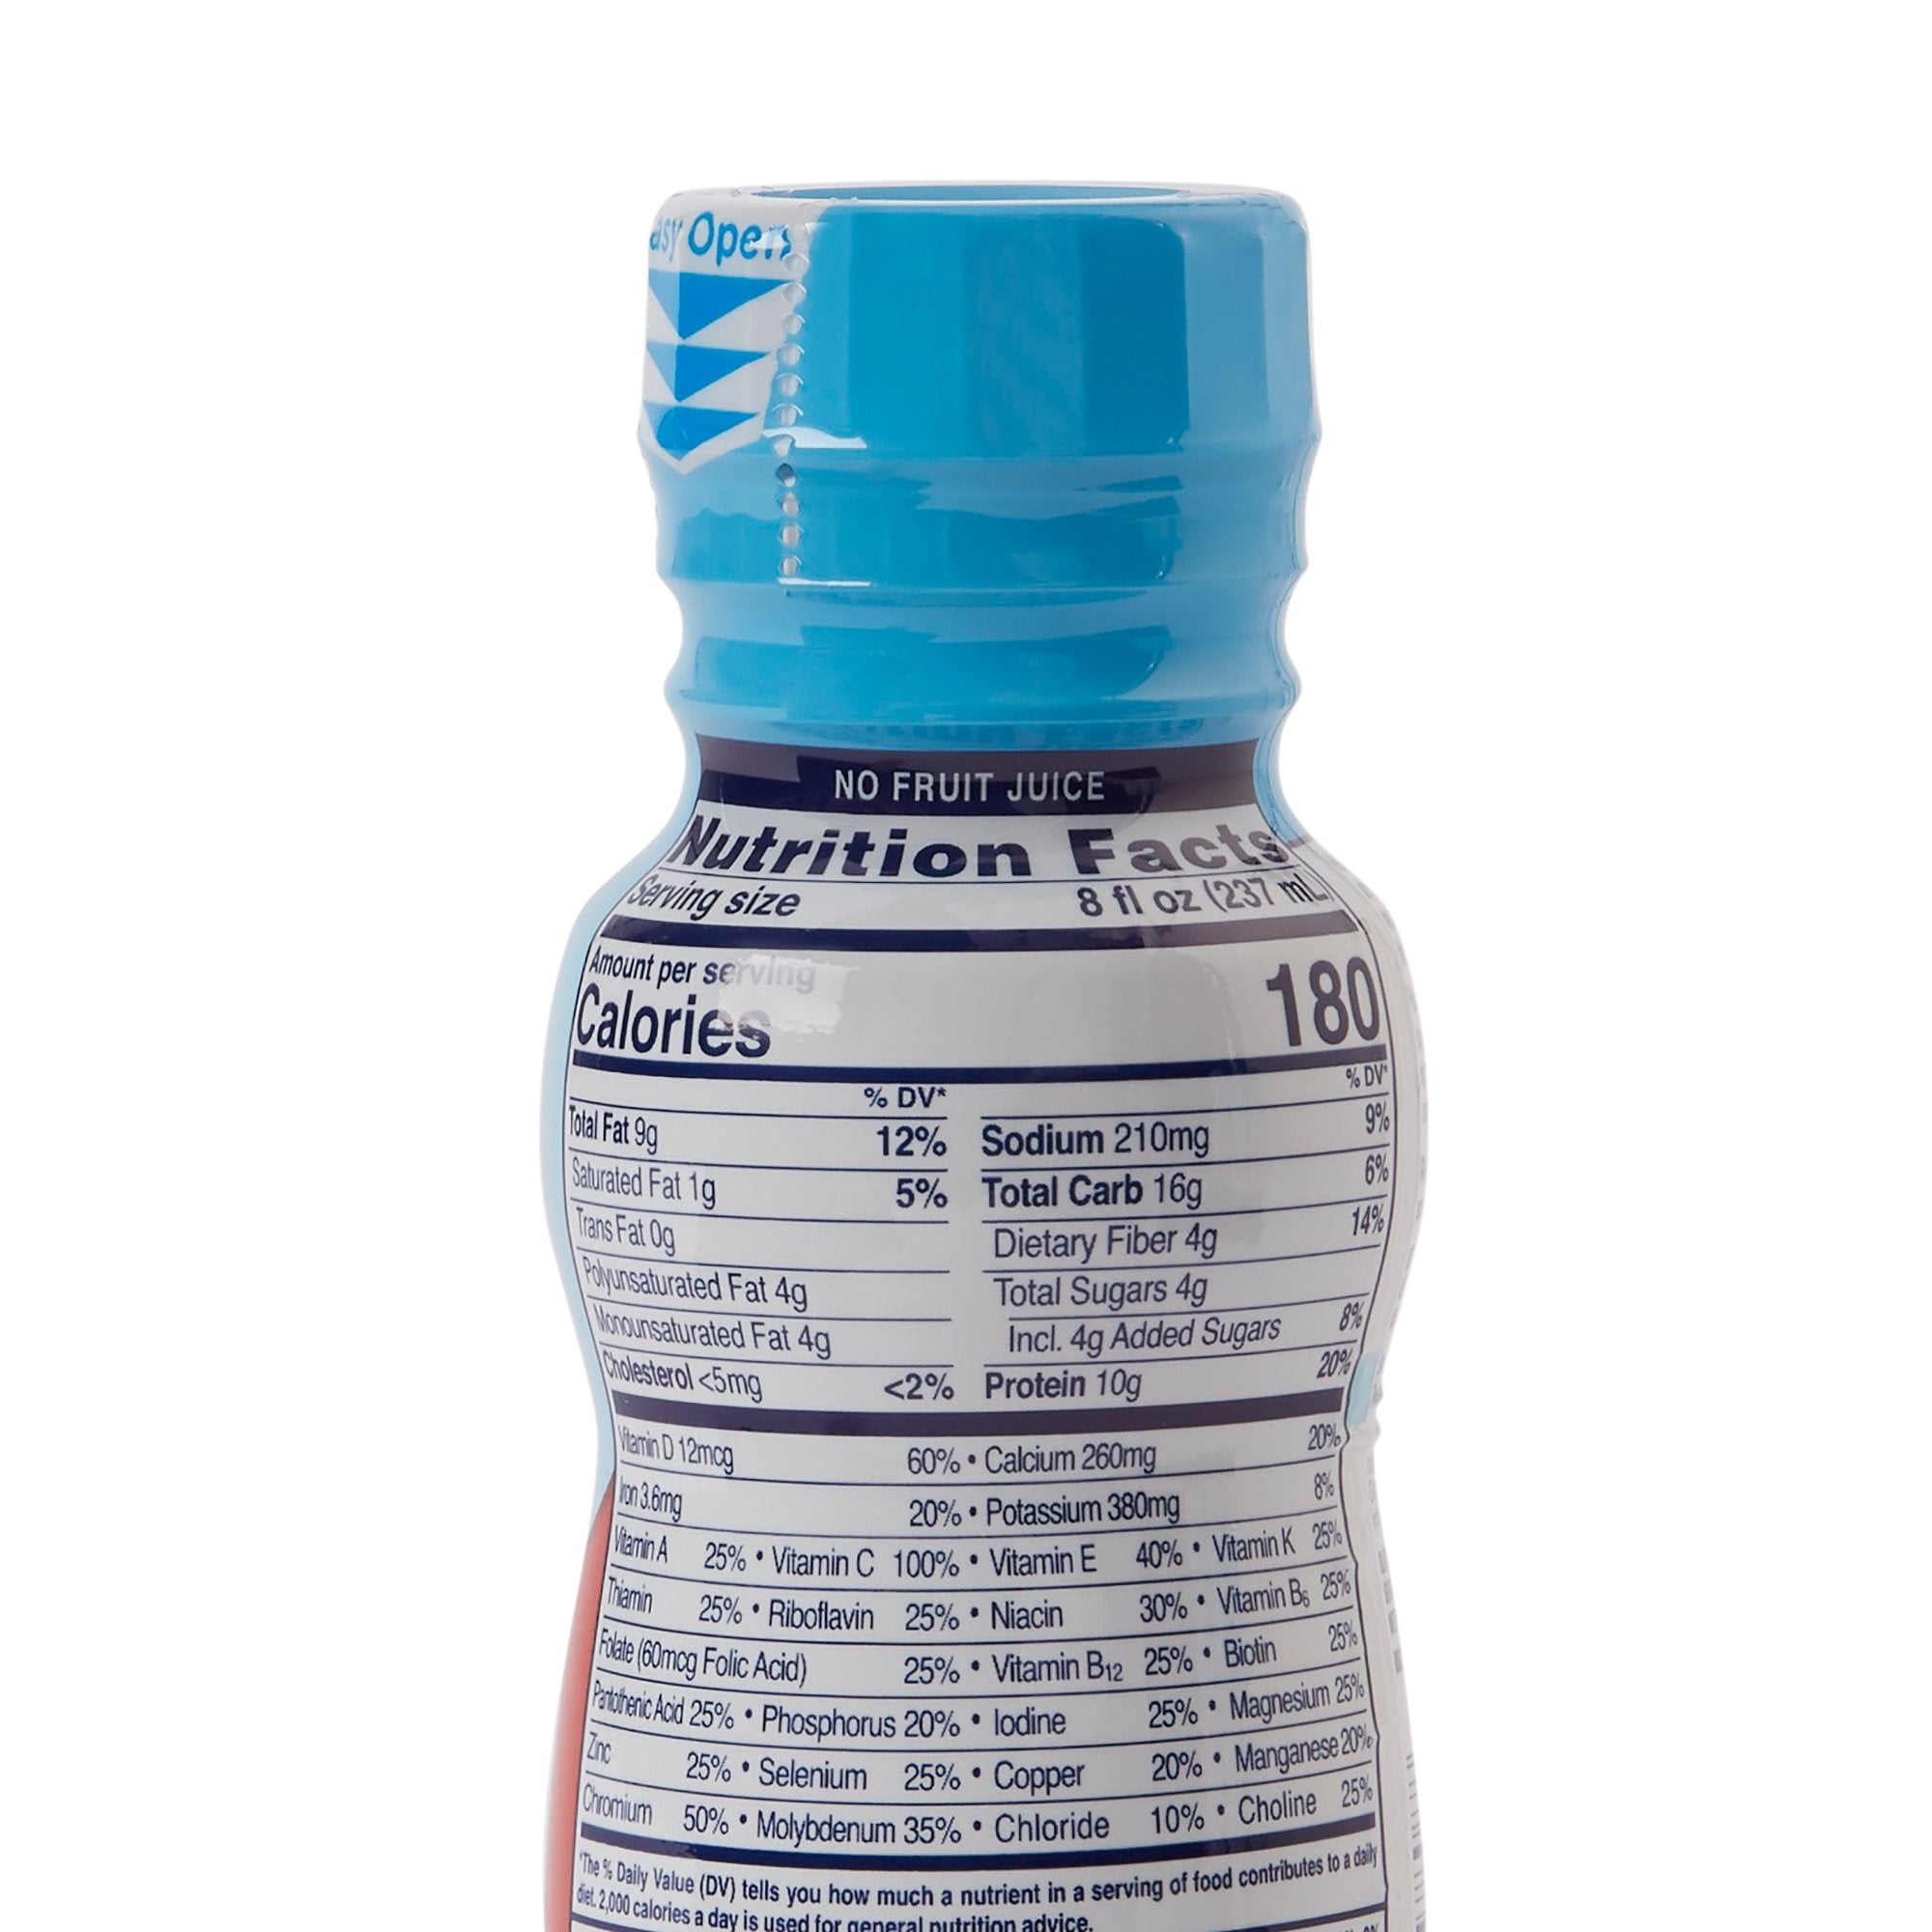 Glucerna Original Shake, Strawberry, 8 oz. - Diabetic Support Formula (24 Pack)